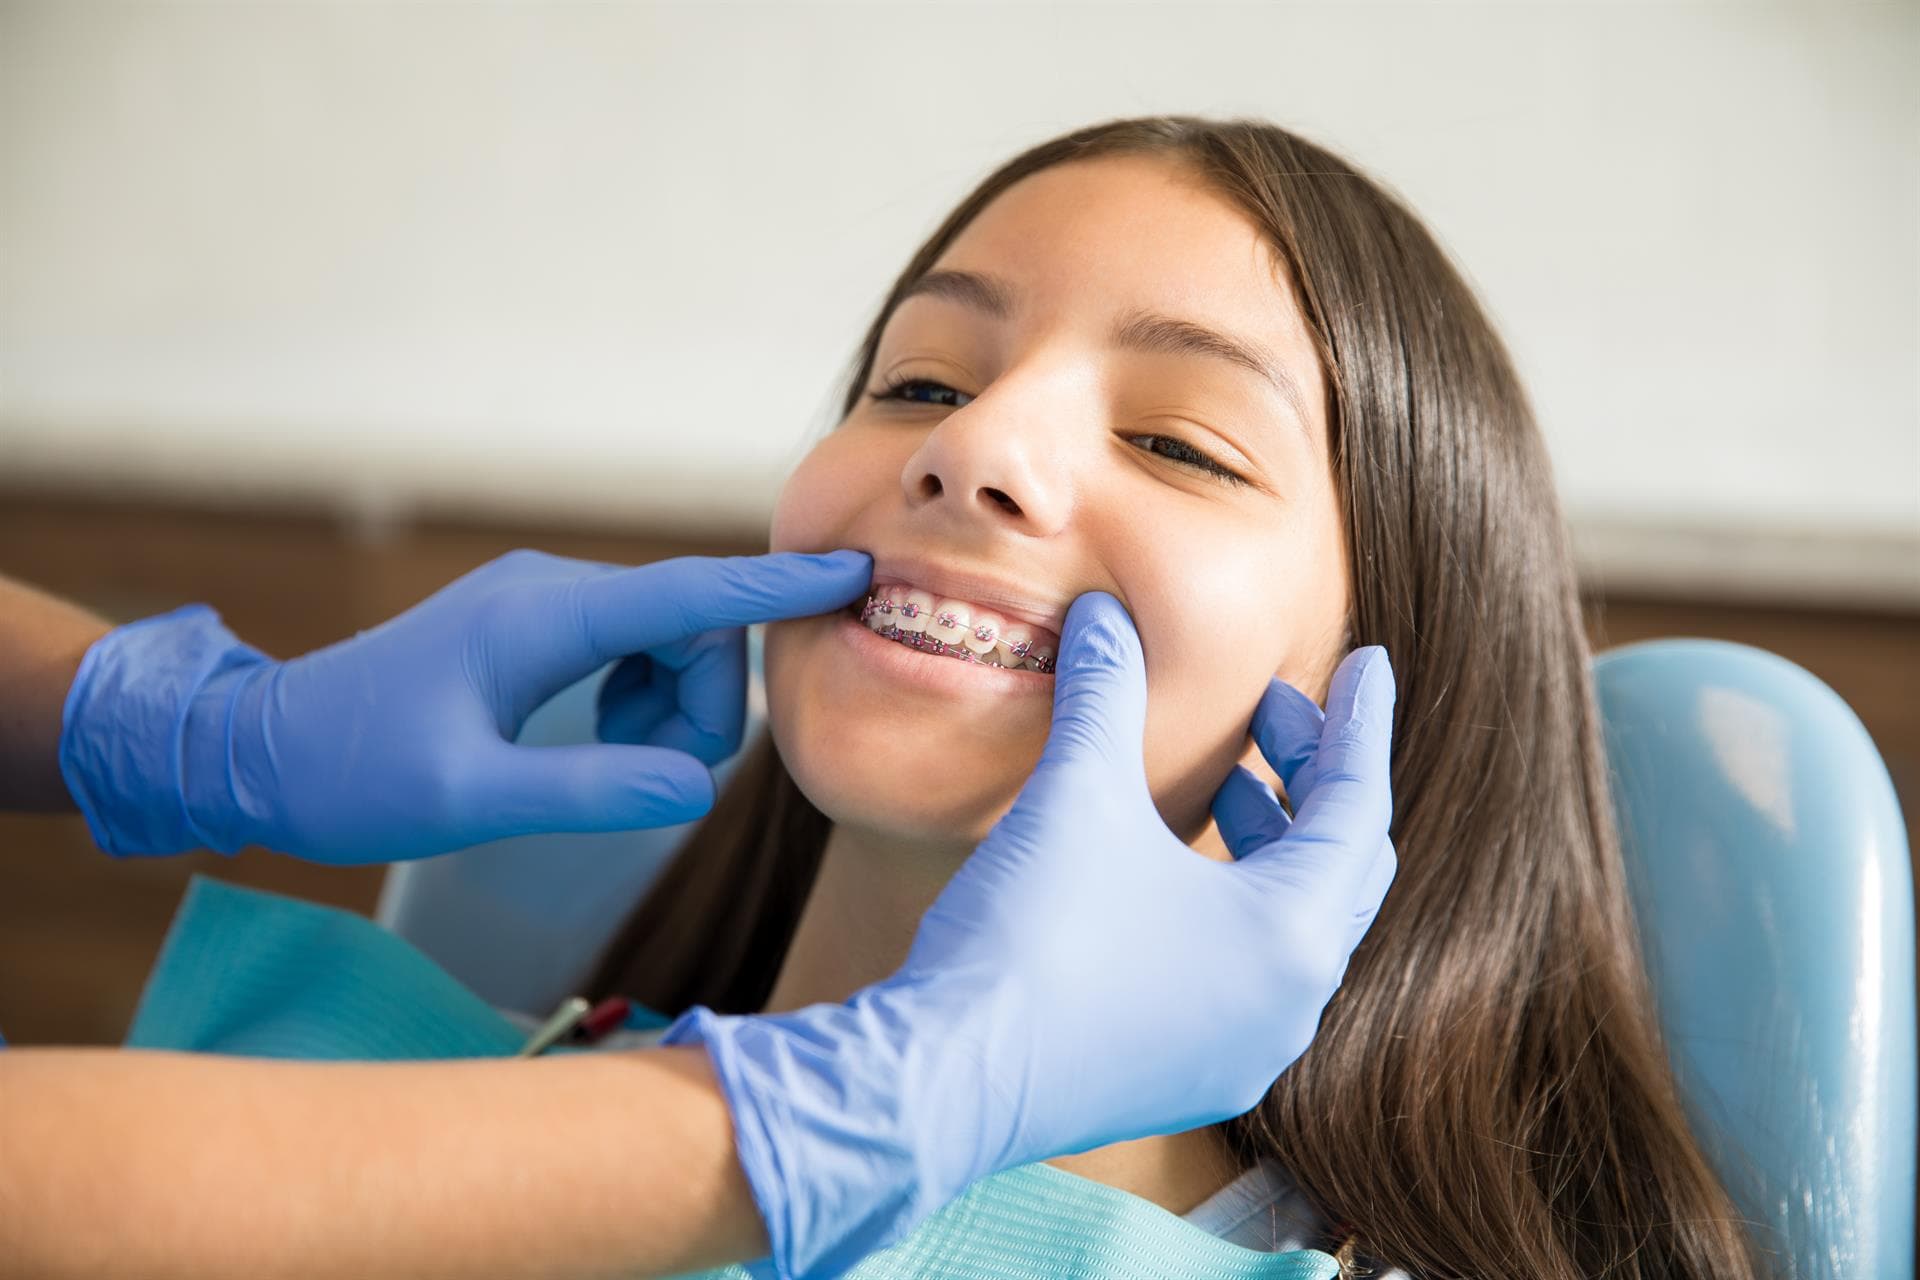  ¡Con nuestra ortodoncia en Monforte tendrás unos dientes impecables!